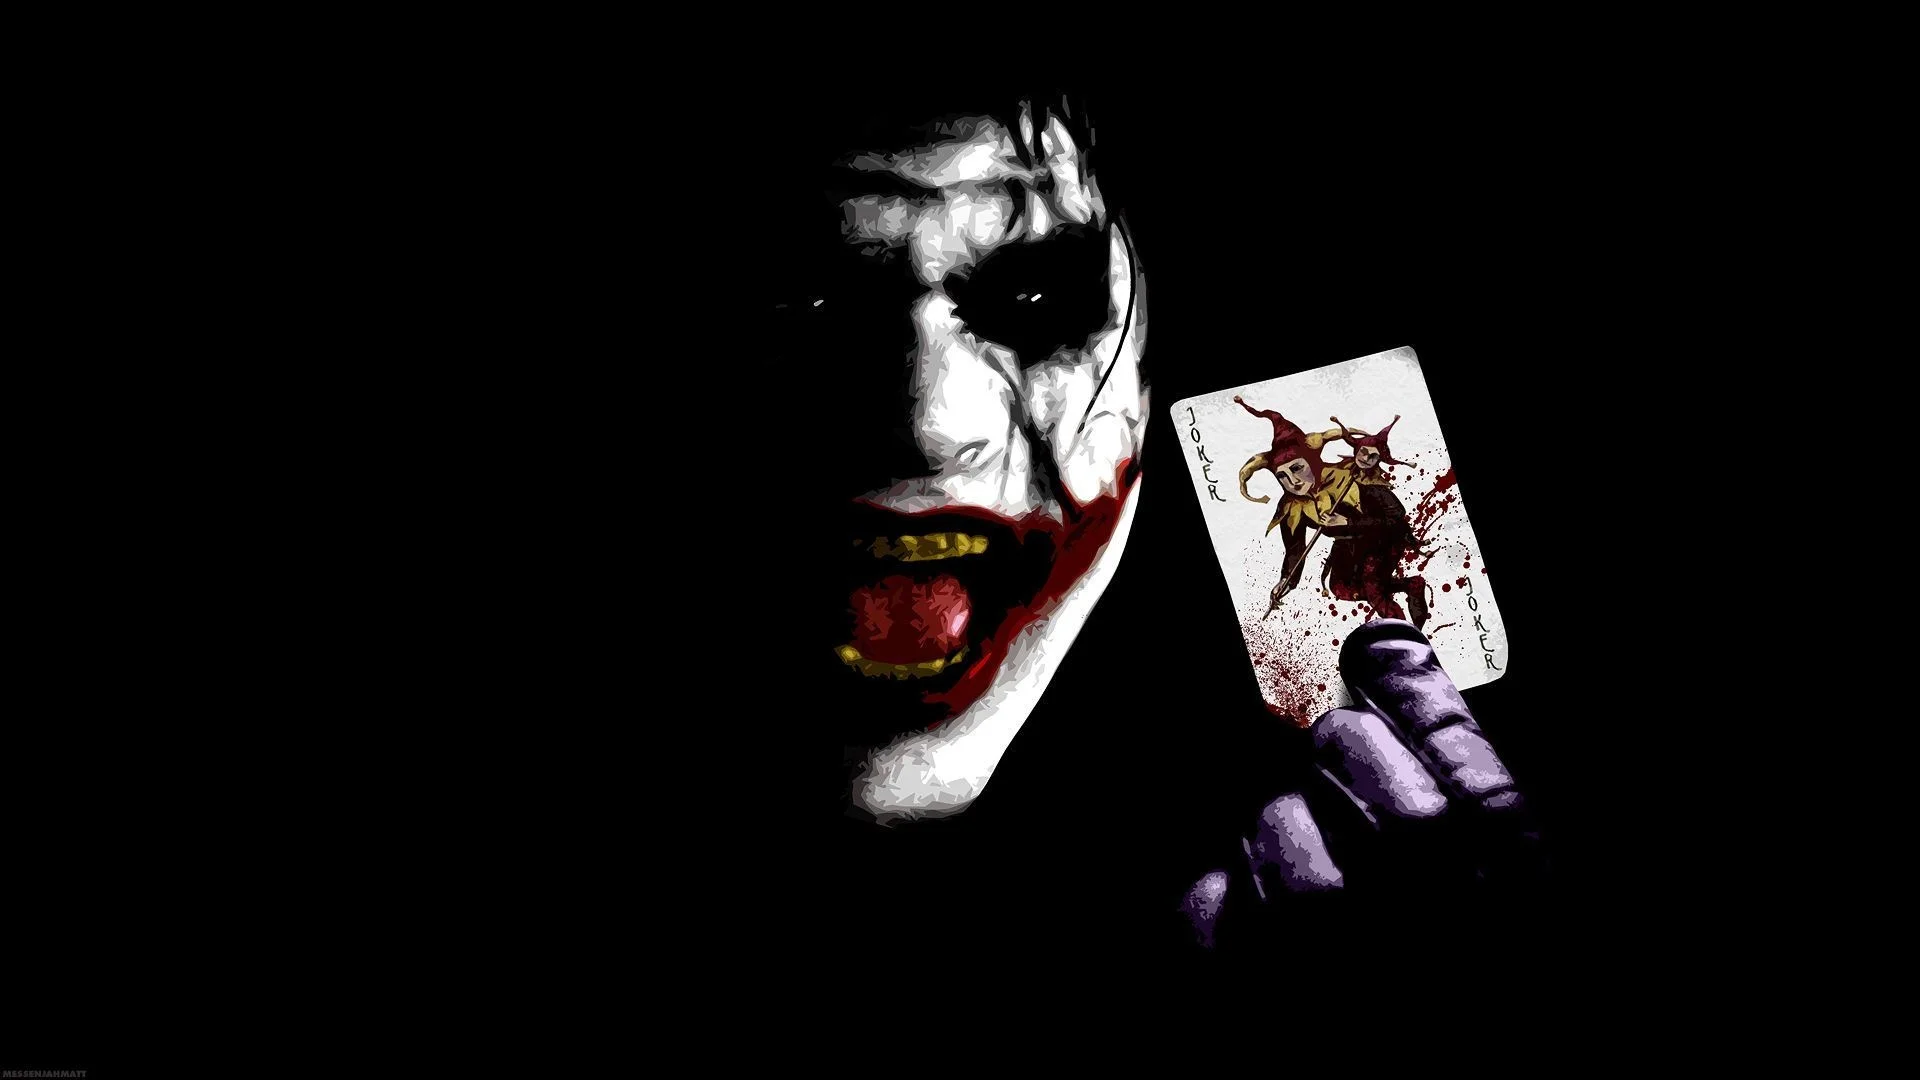 Joker Wallpaper in Dangerous Mod with Joker card. on